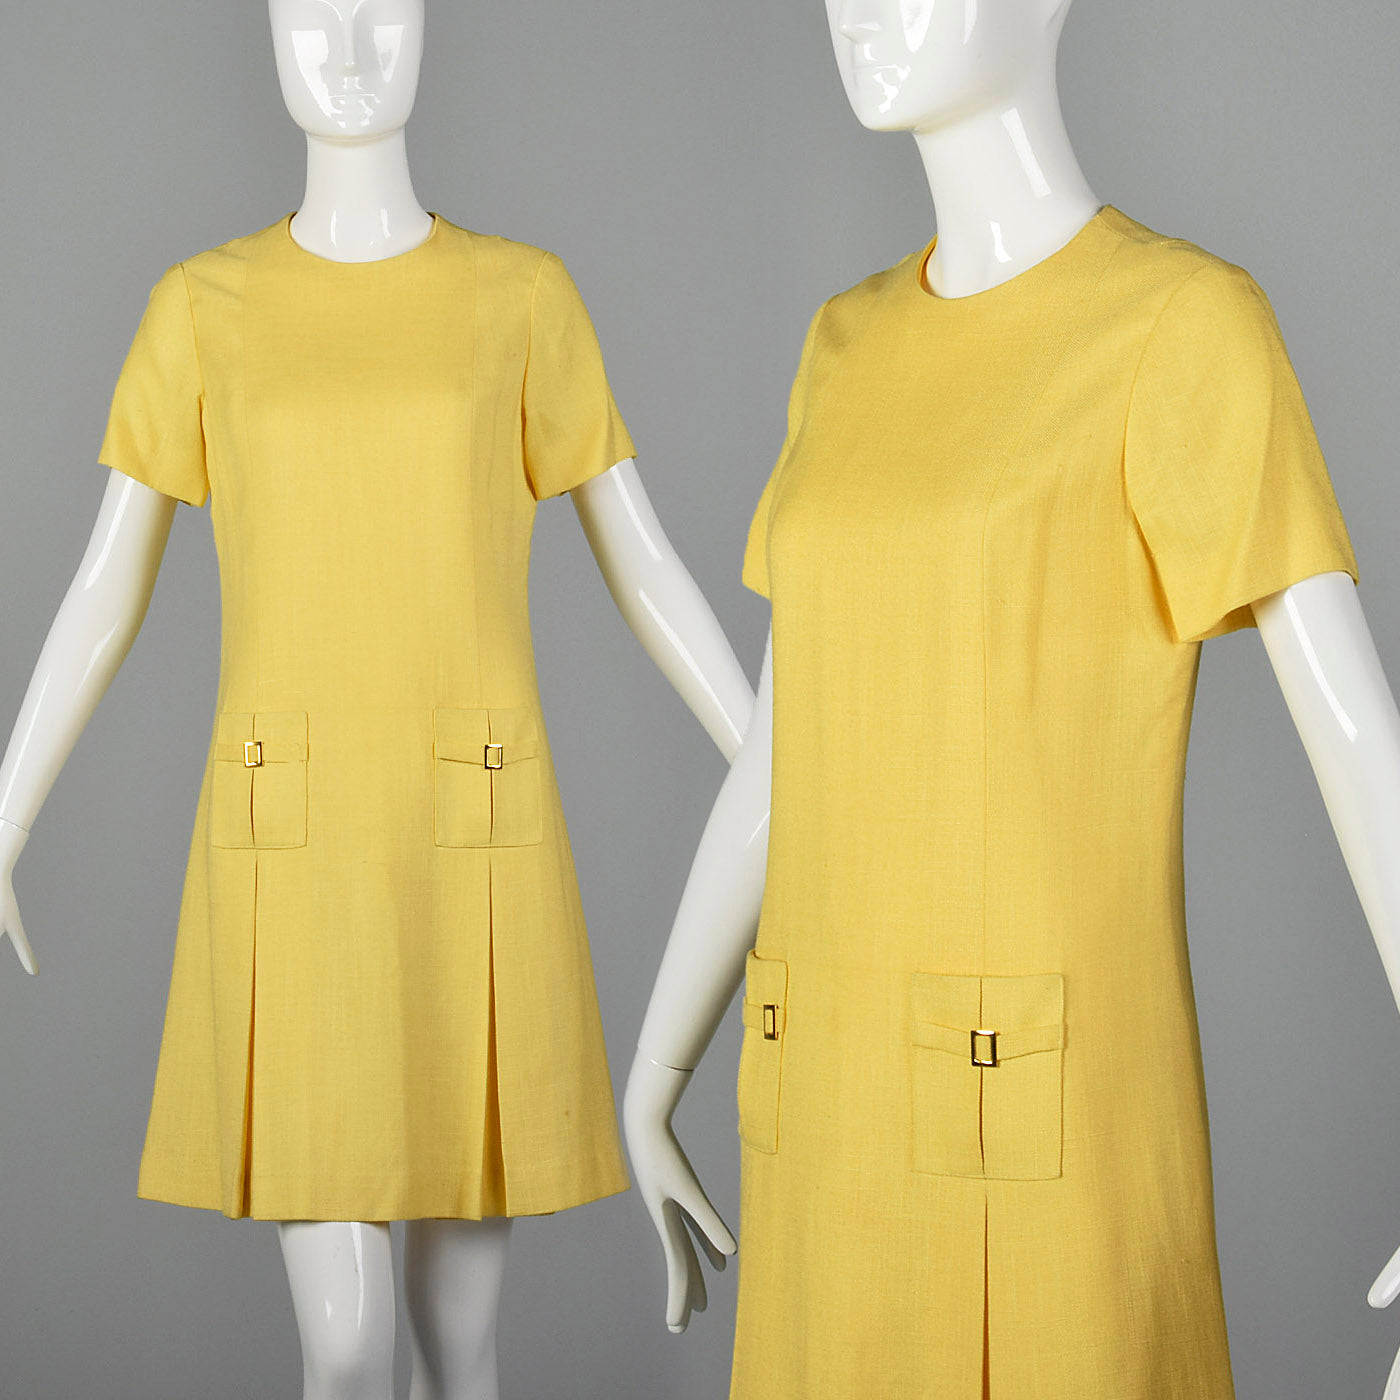 1960s shift dress